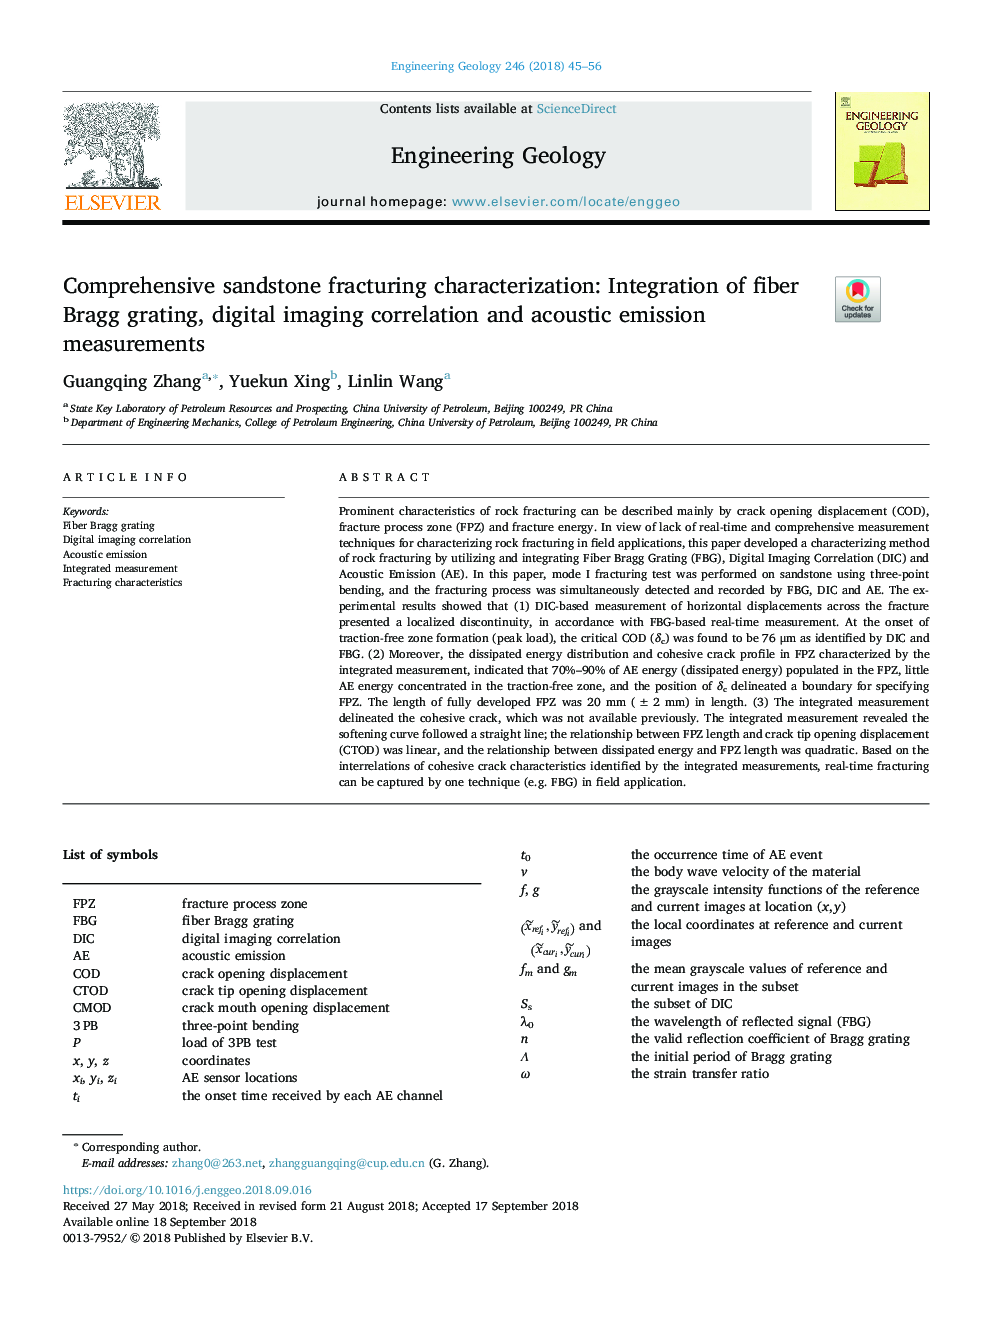 Comprehensive sandstone fracturing characterization: Integration of fiber Bragg grating, digital imaging correlation and acoustic emission measurements